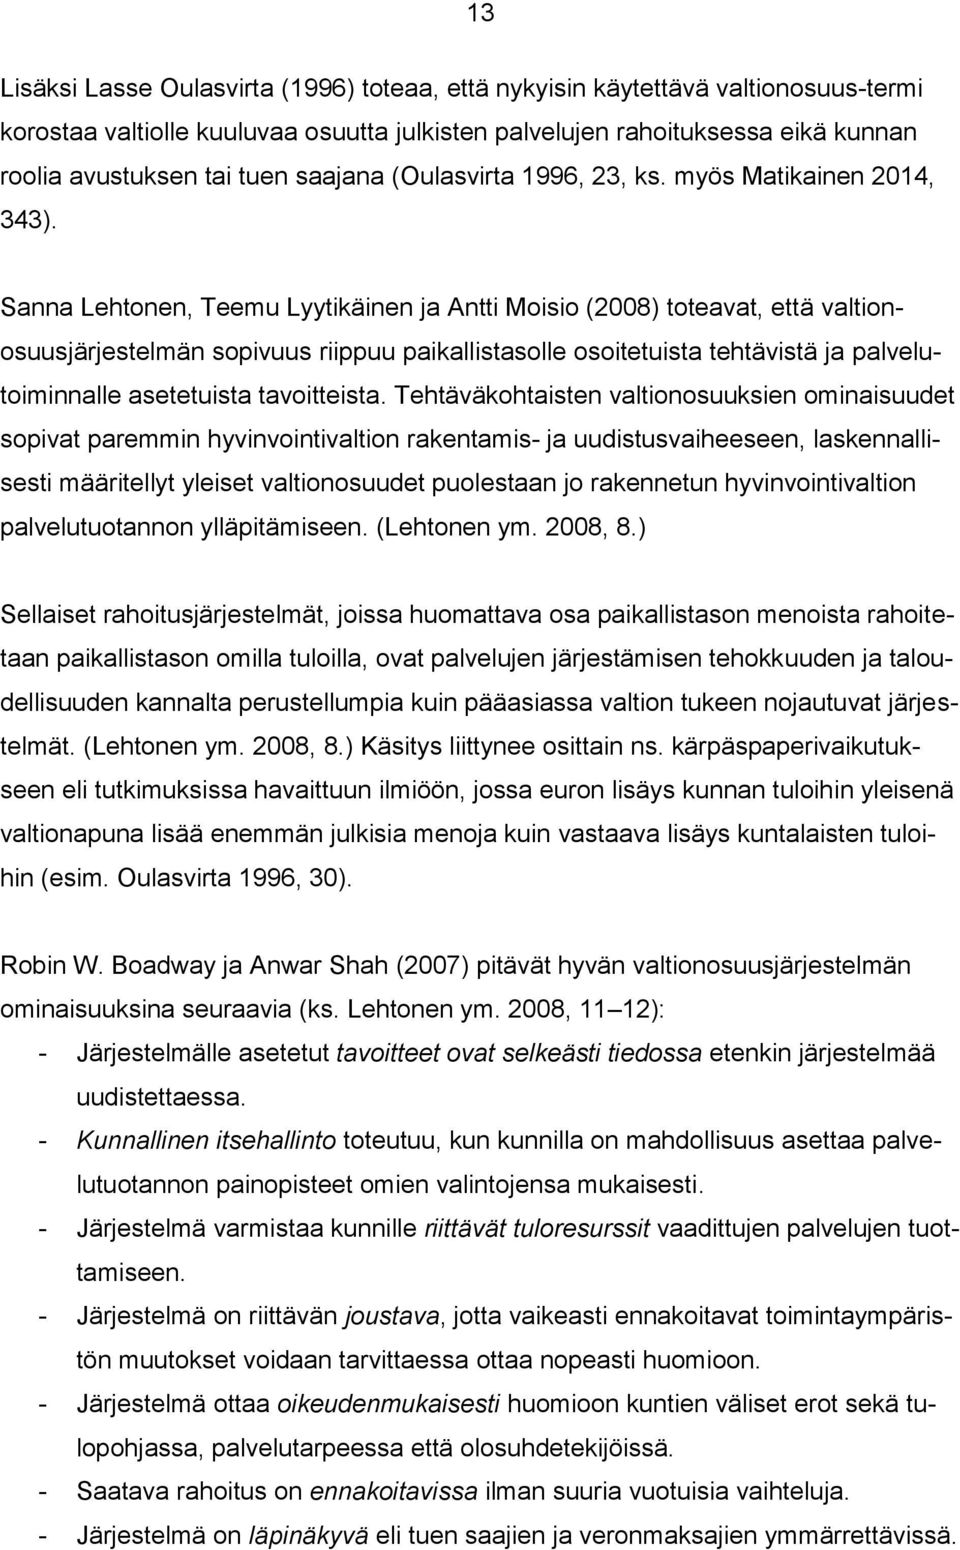 Sanna Lehtonen, Teemu Lyytikäinen ja Antti Moisio (2008) toteavat, että valtionosuusjärjestelmän sopivuus riippuu paikallistasolle osoitetuista tehtävistä ja palvelutoiminnalle asetetuista